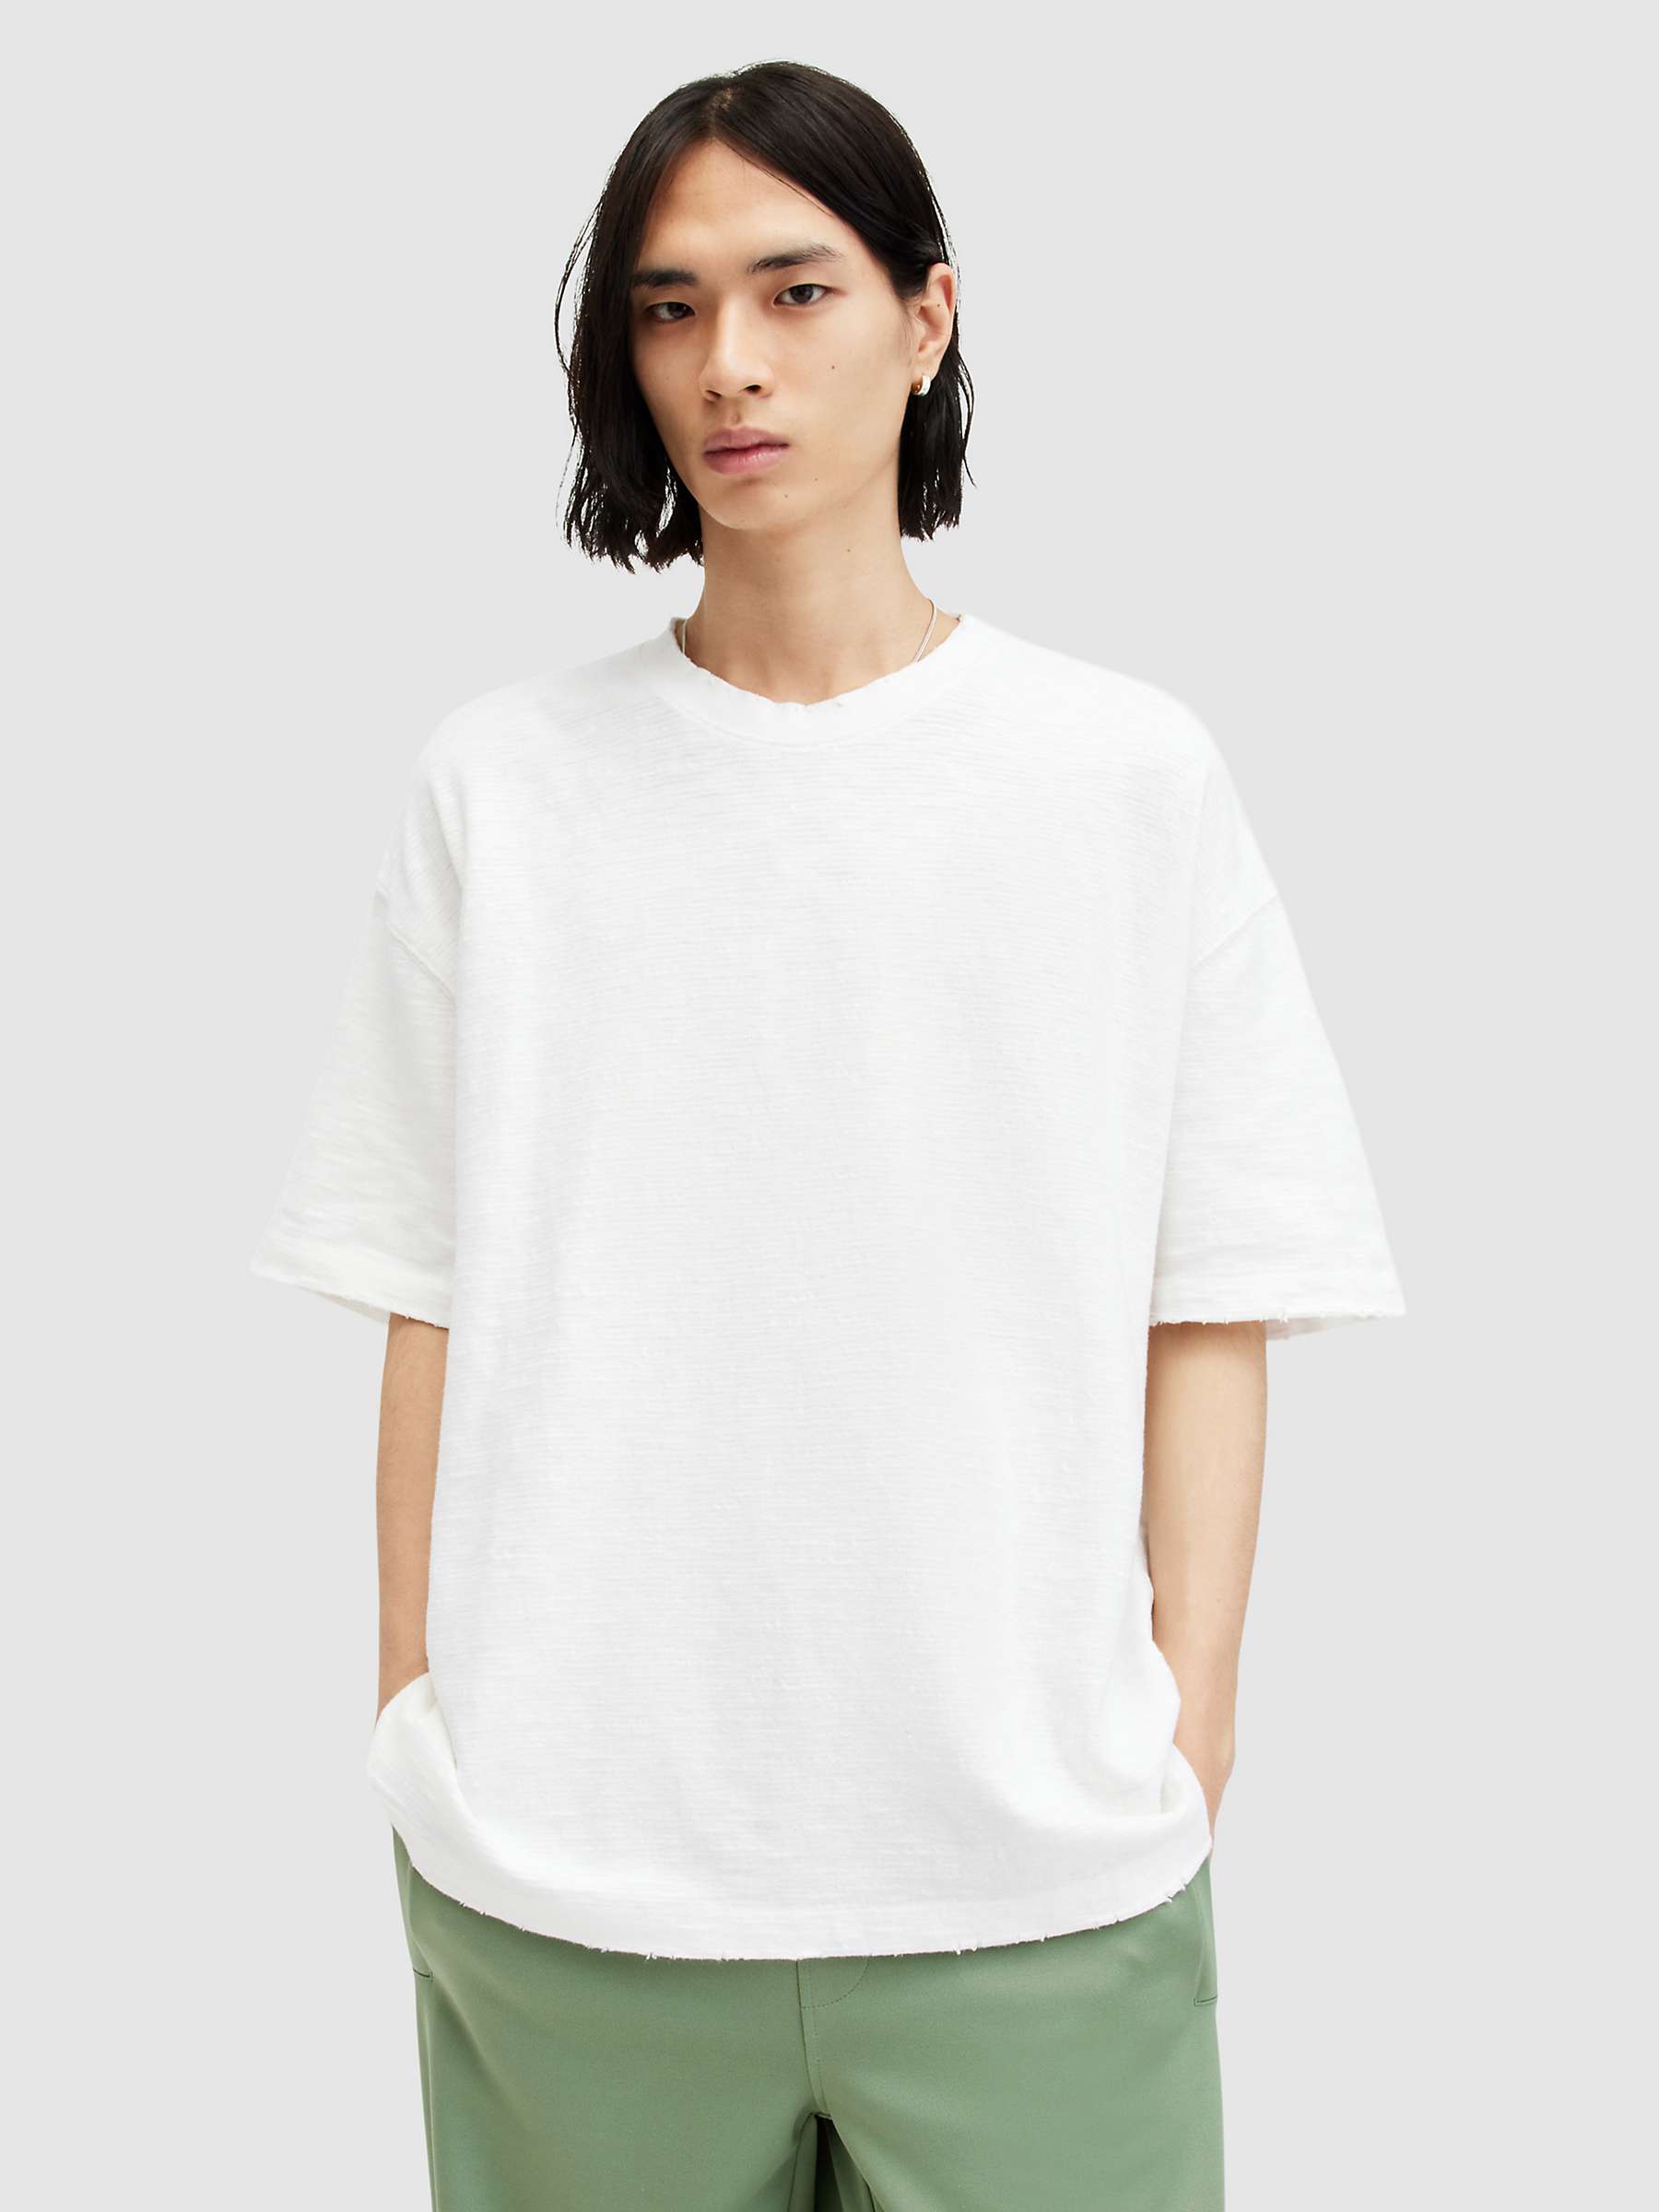 Buy AllSaints Aspen Oversized Short Sleeve T-Shirt, Lilly White Online at johnlewis.com